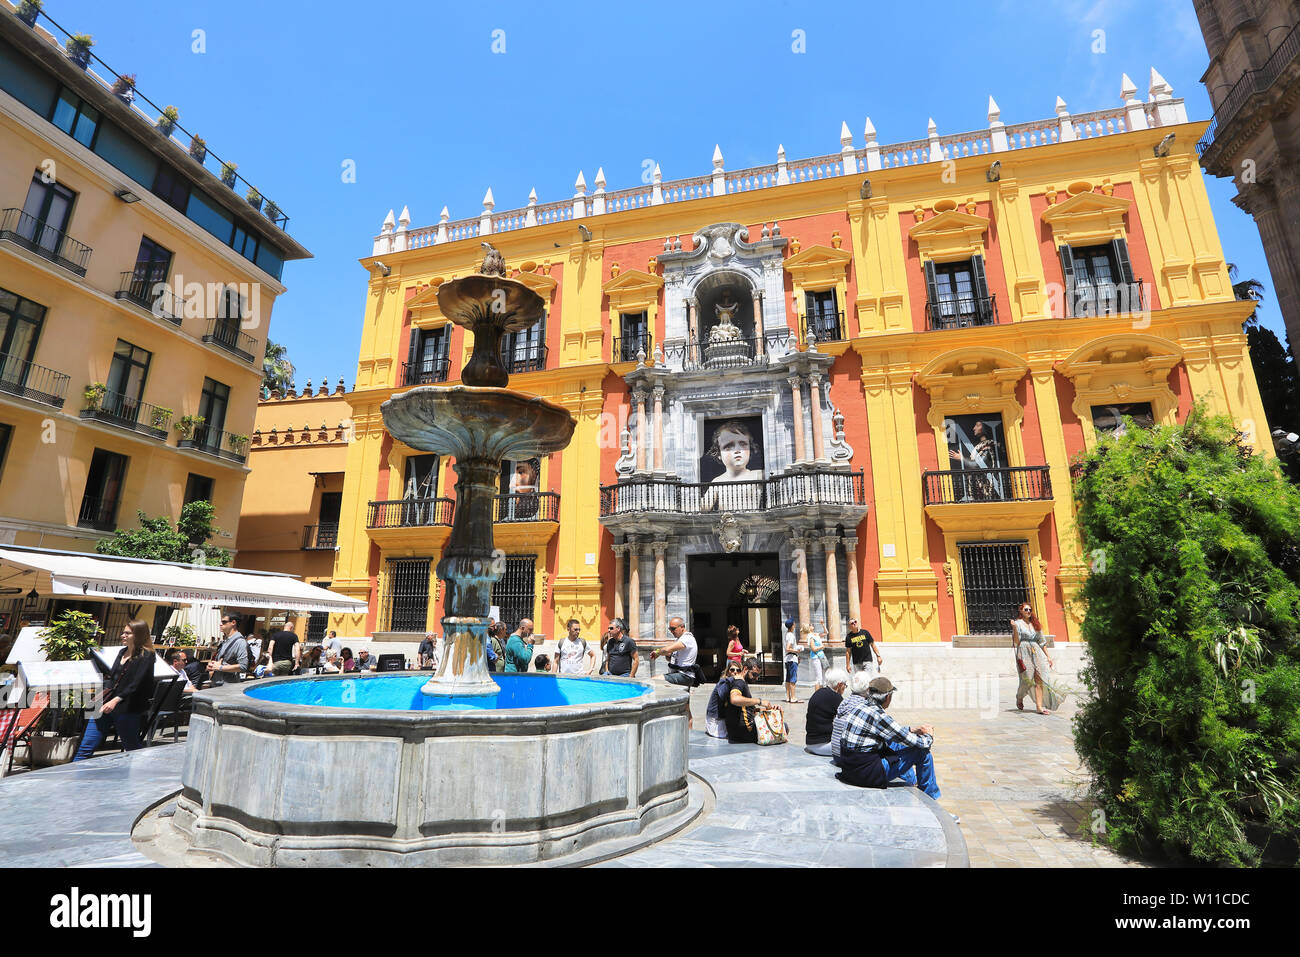 La façade baroque espagnol colorés de l'Episcopal Palace, qui présente des expositions d'art religieux, sur la Plaza Obispo, dans la vieille ville de la ville de Malaga, Espagne Banque D'Images